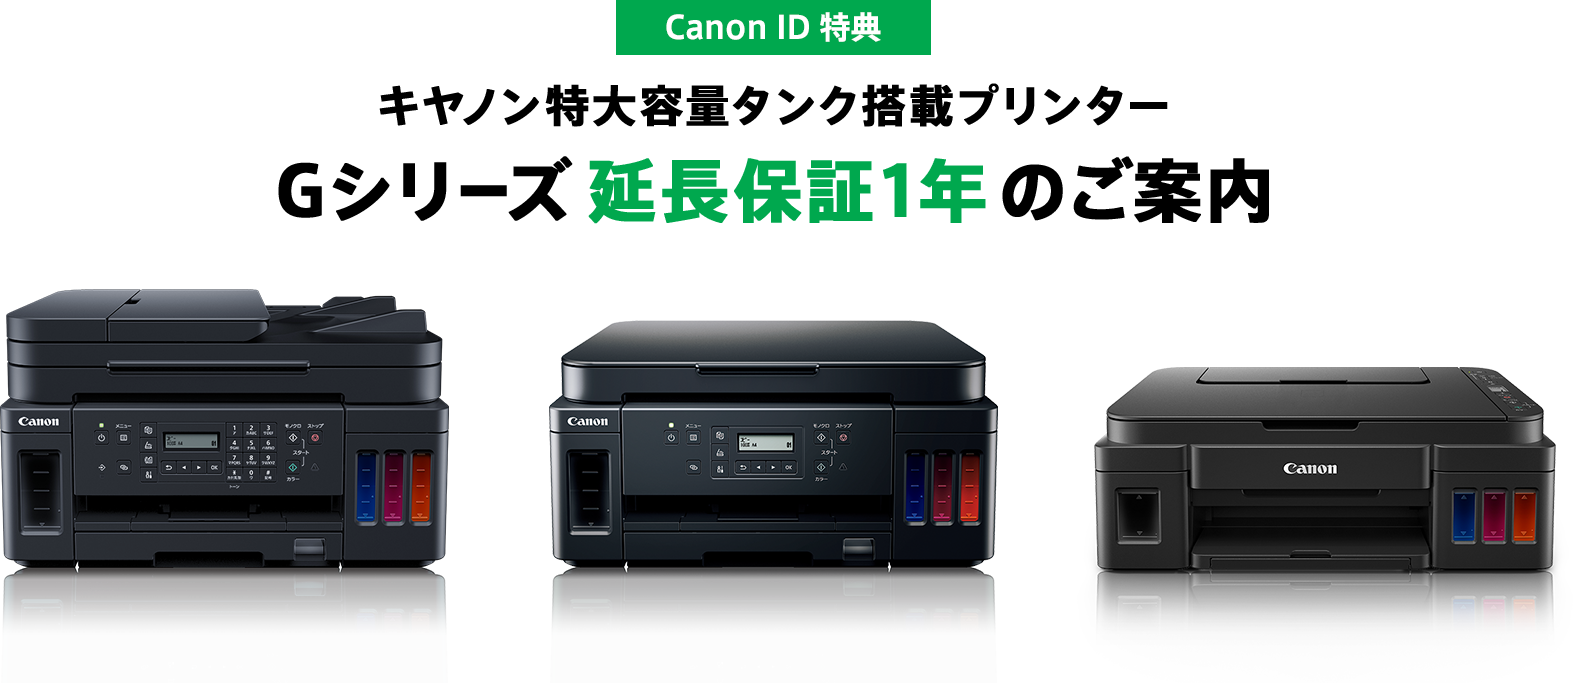 Canon ID 特典 キヤノン特大容量タンク搭載プリンター Gシリーズ延長保証1年のご案内